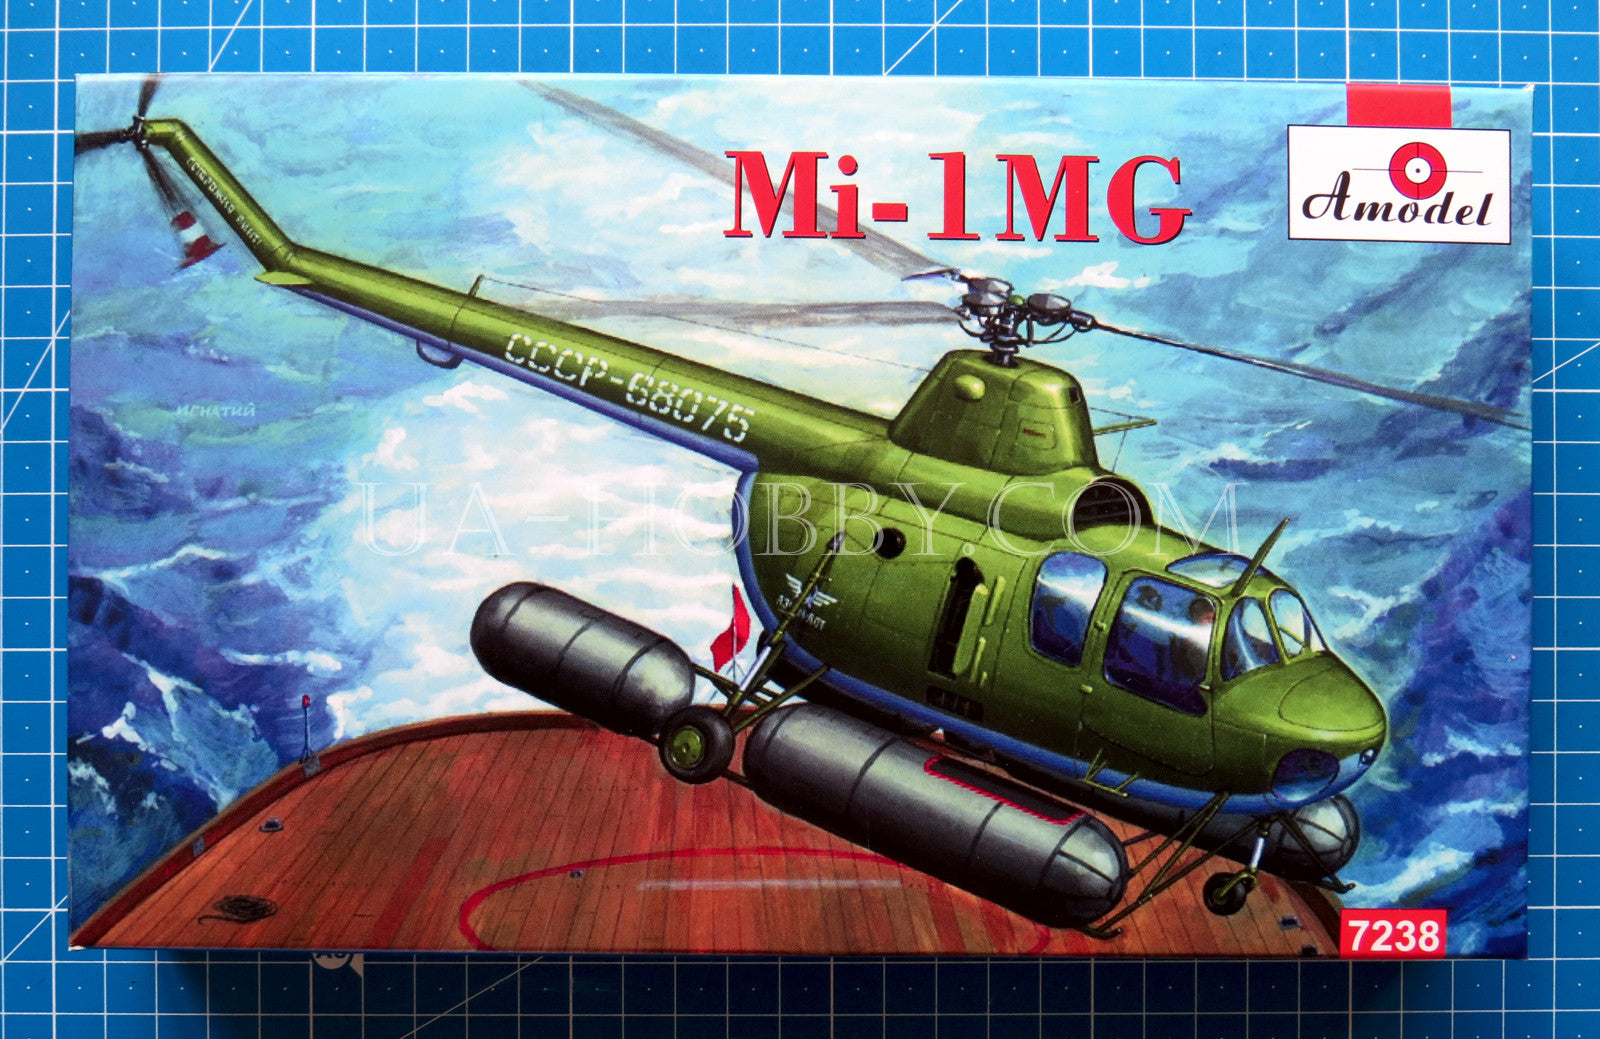 1/72 Mil Mi-1MG. Amodel 7238